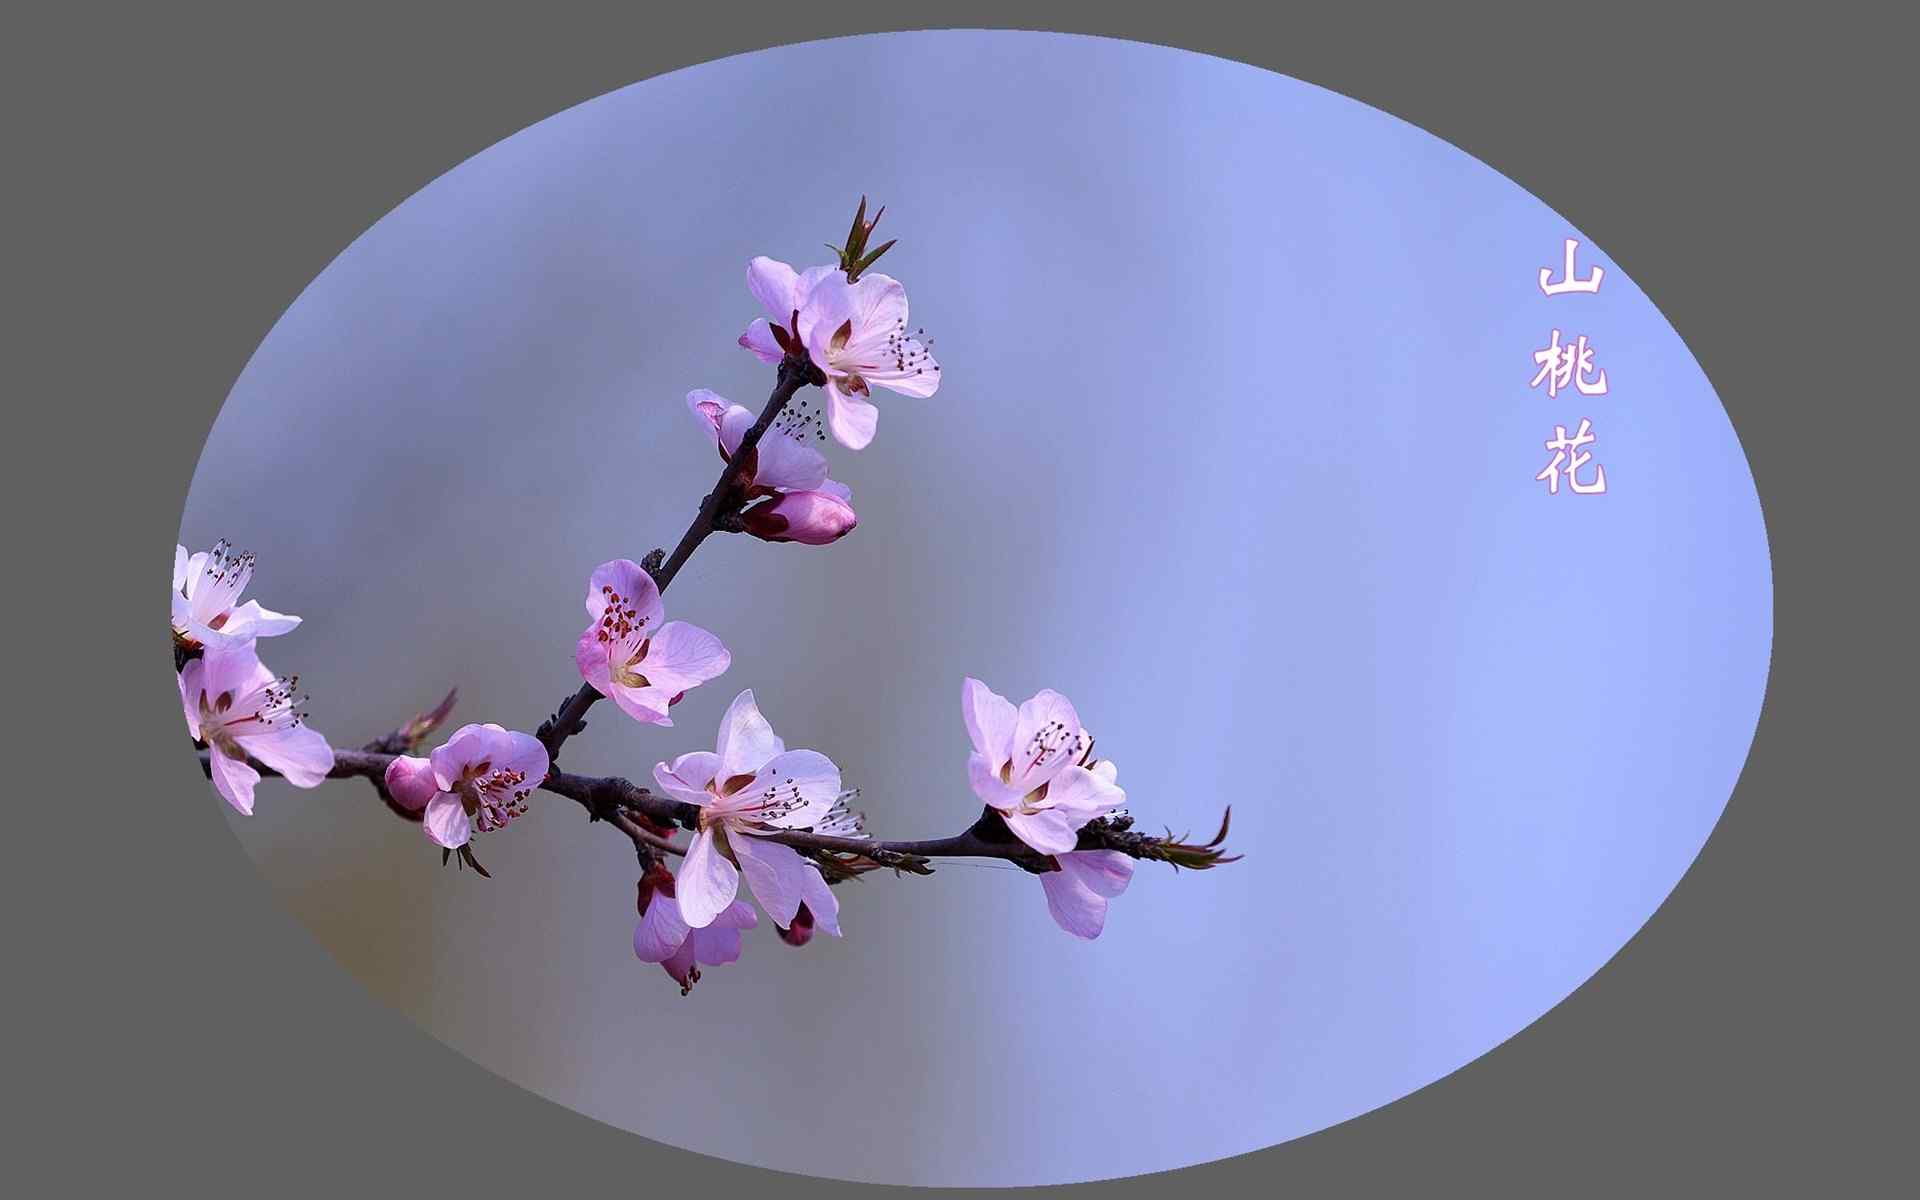 唯美粉嫩山桃花植物图片桌面壁纸